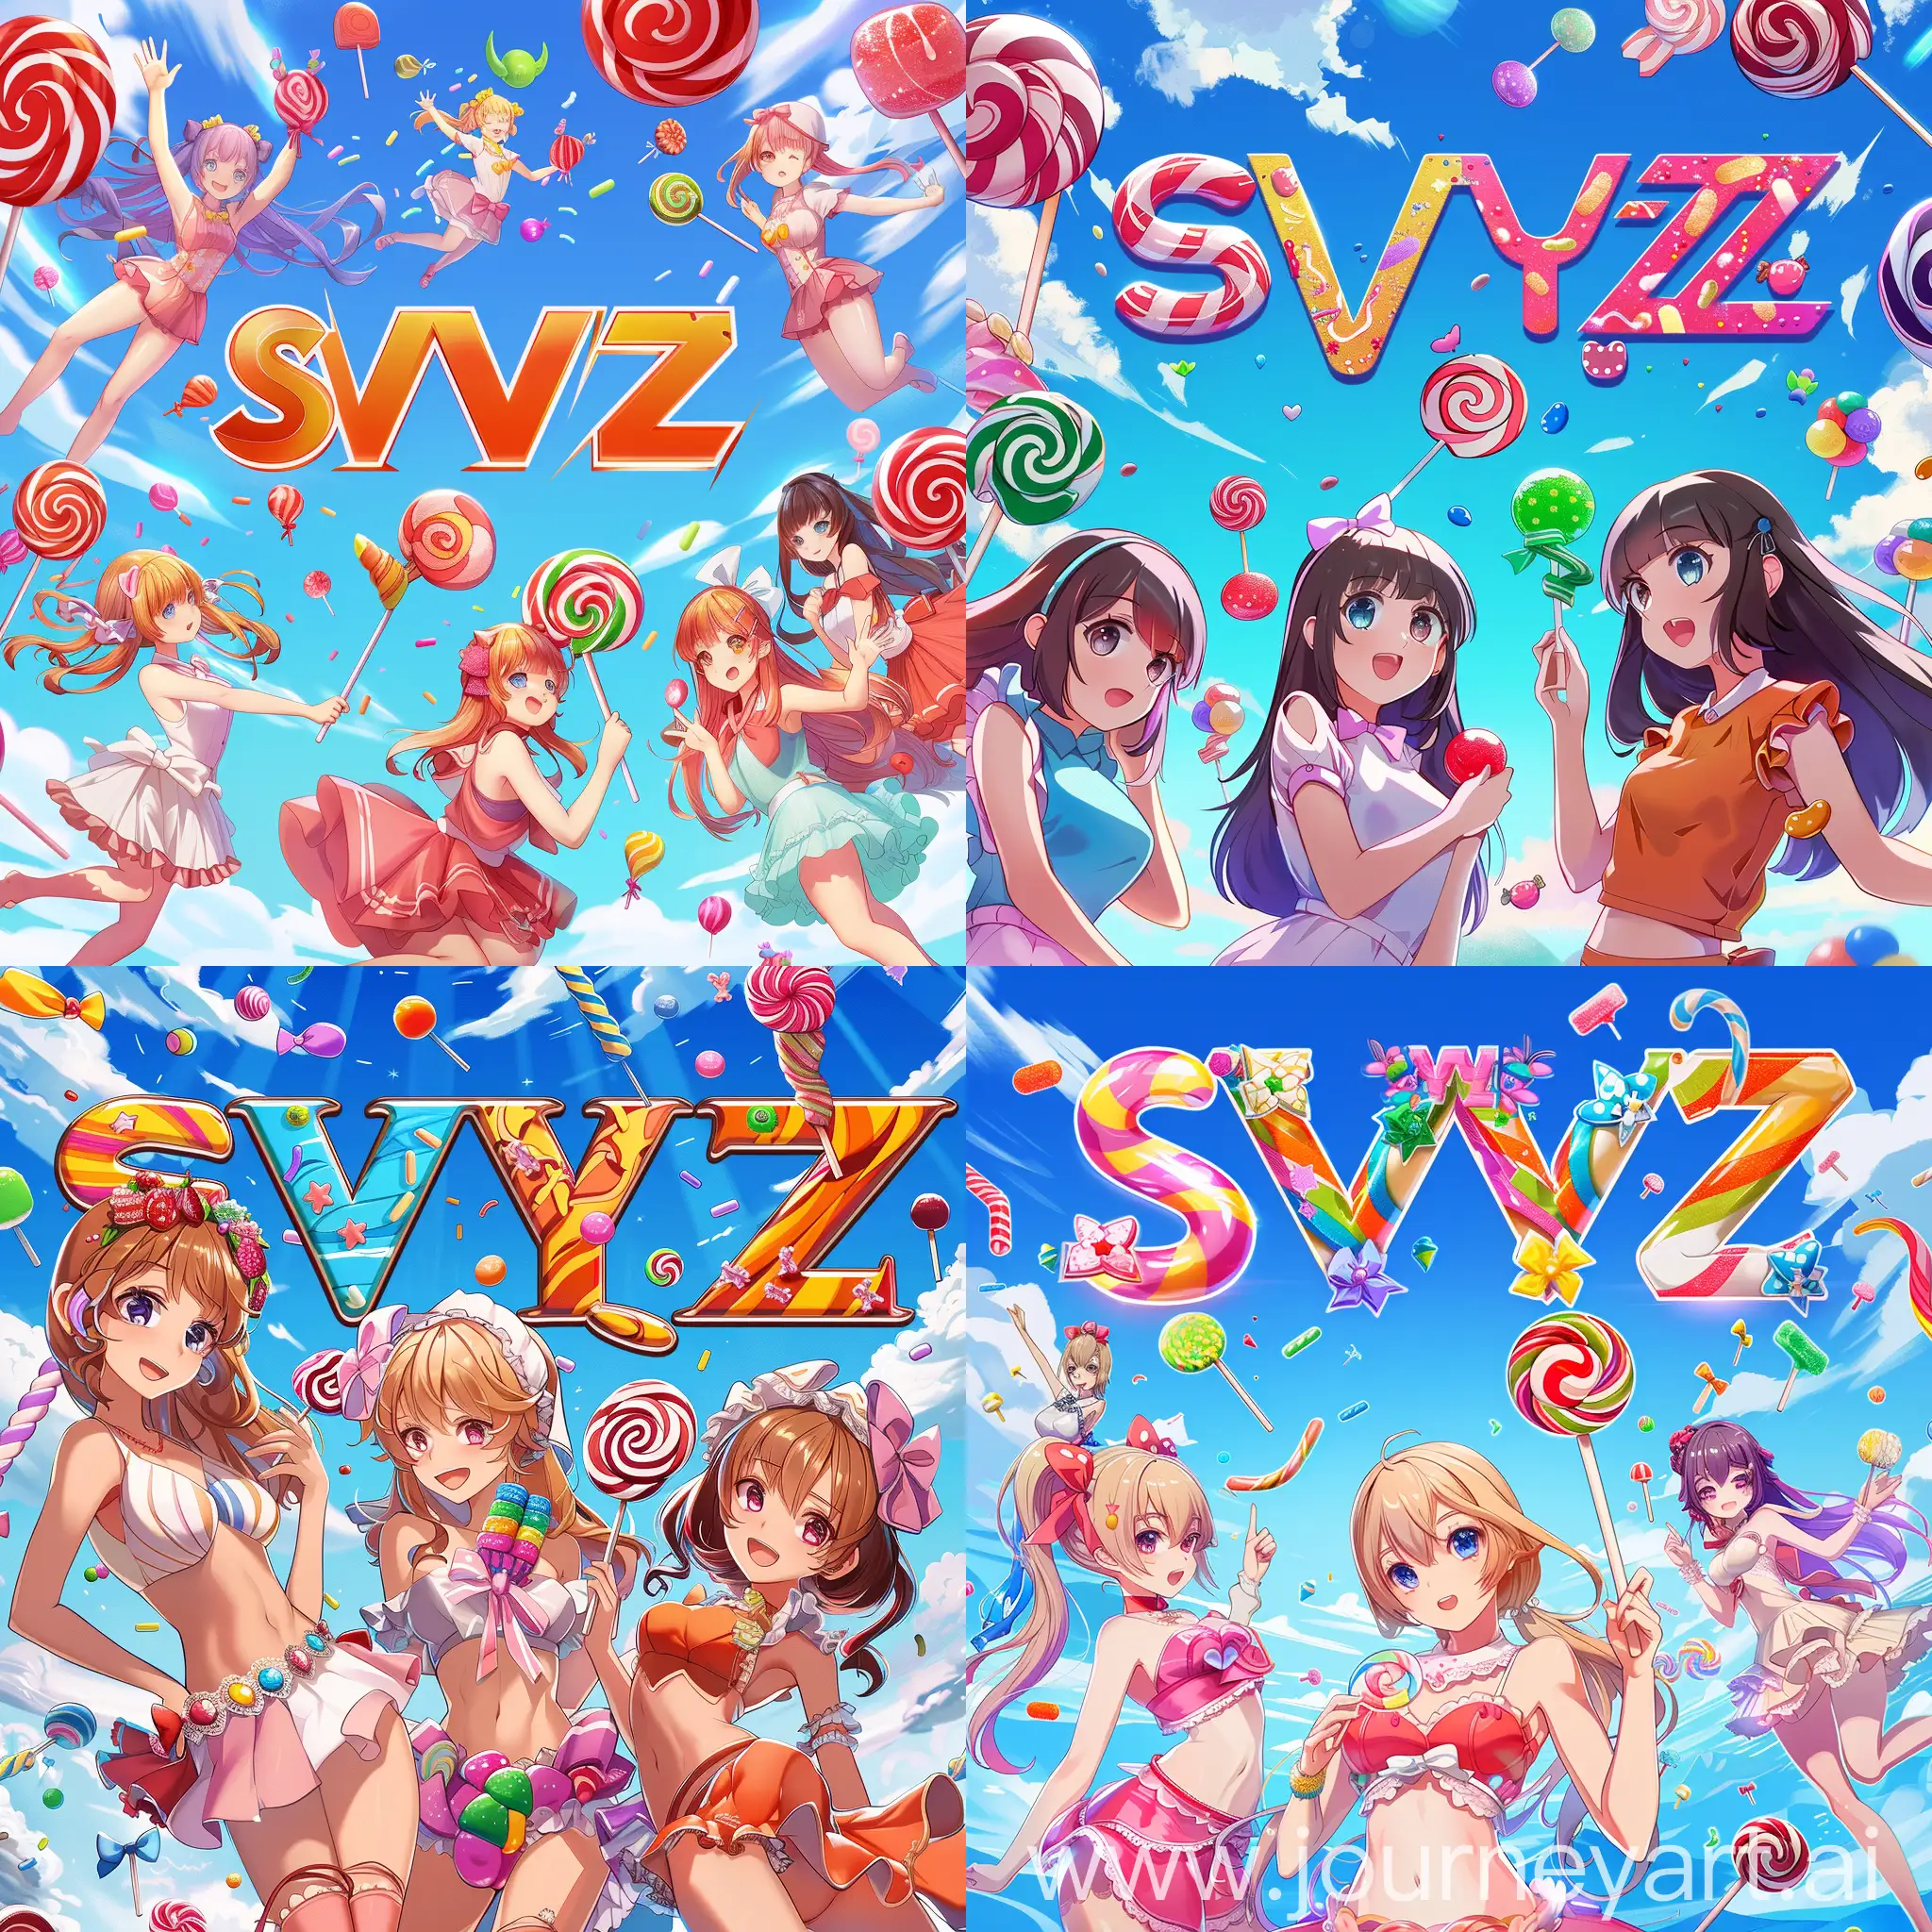 слово SVYAZ логотип на фоне разноцветных аниме девочек, летающие конфеты и леденцы